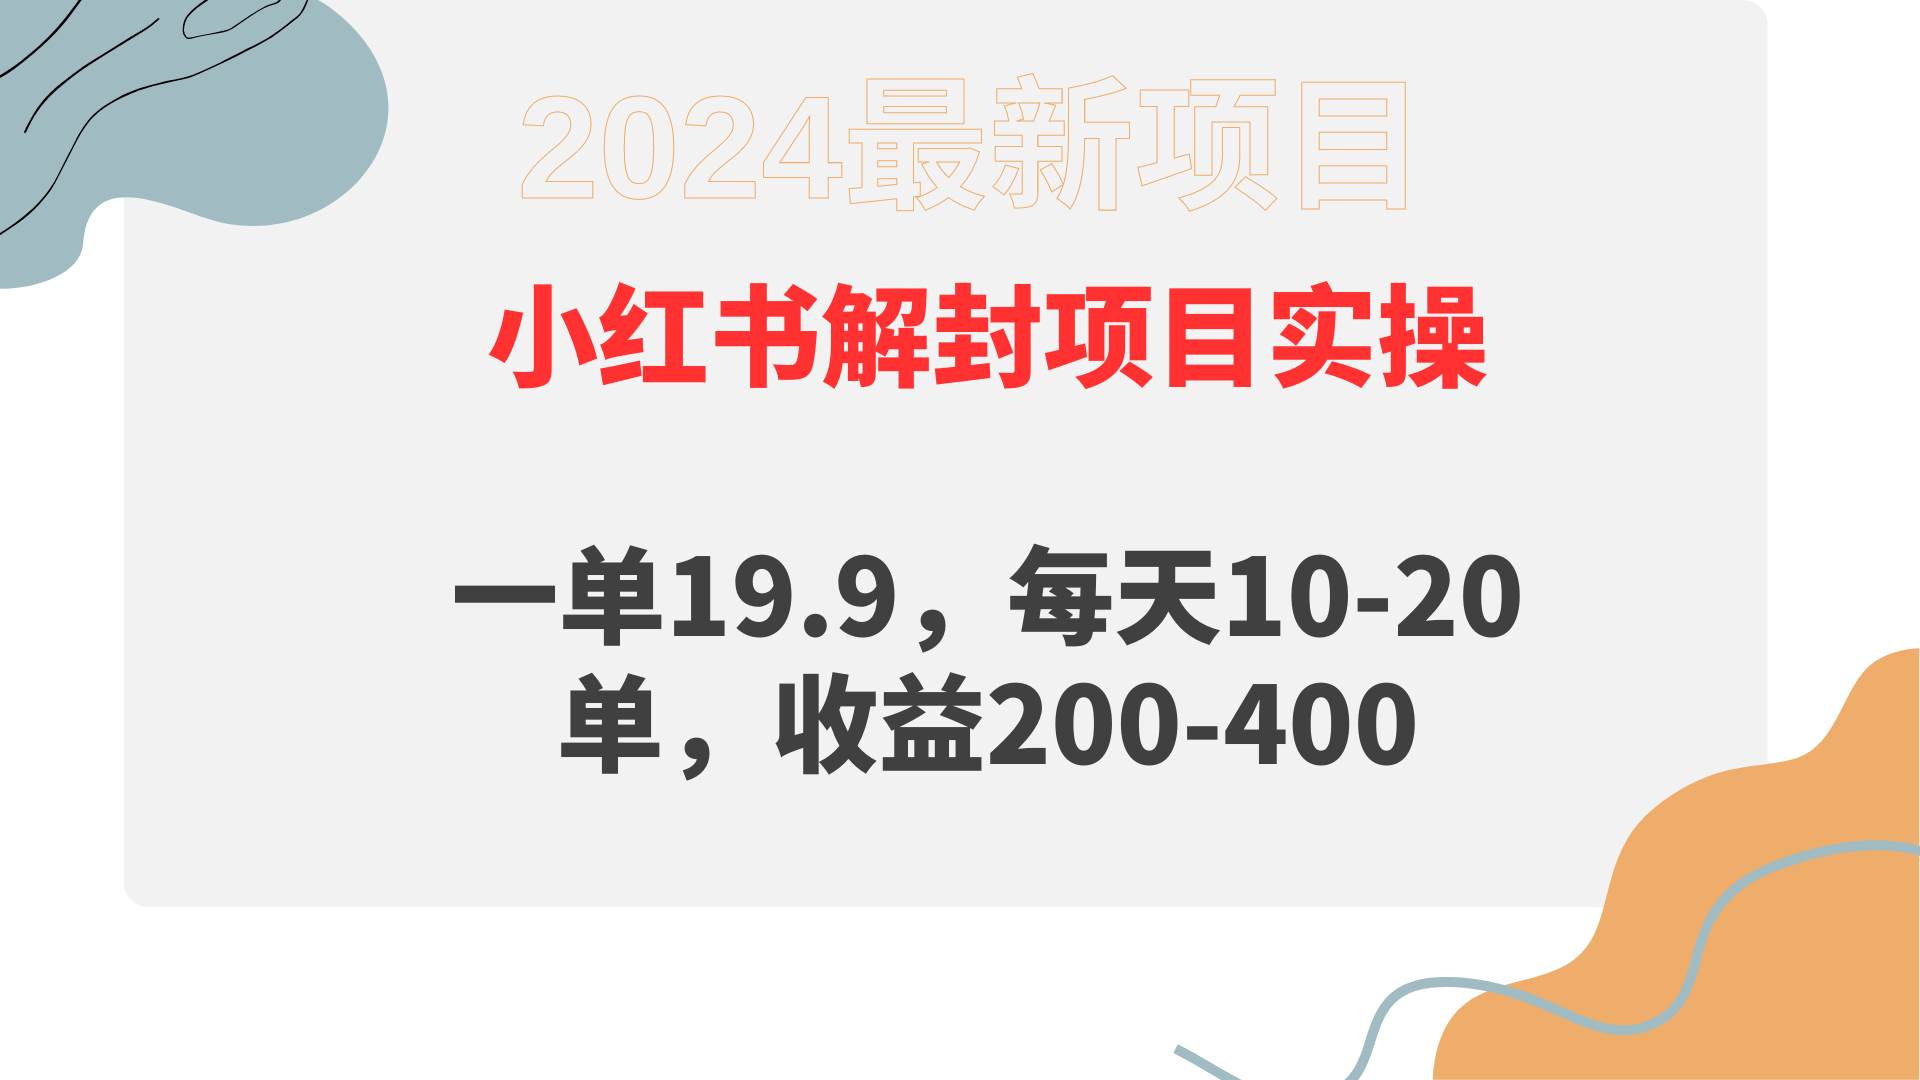 （9583期）小红书解封项目： 一单19.9，每天10-20单，收益200-400